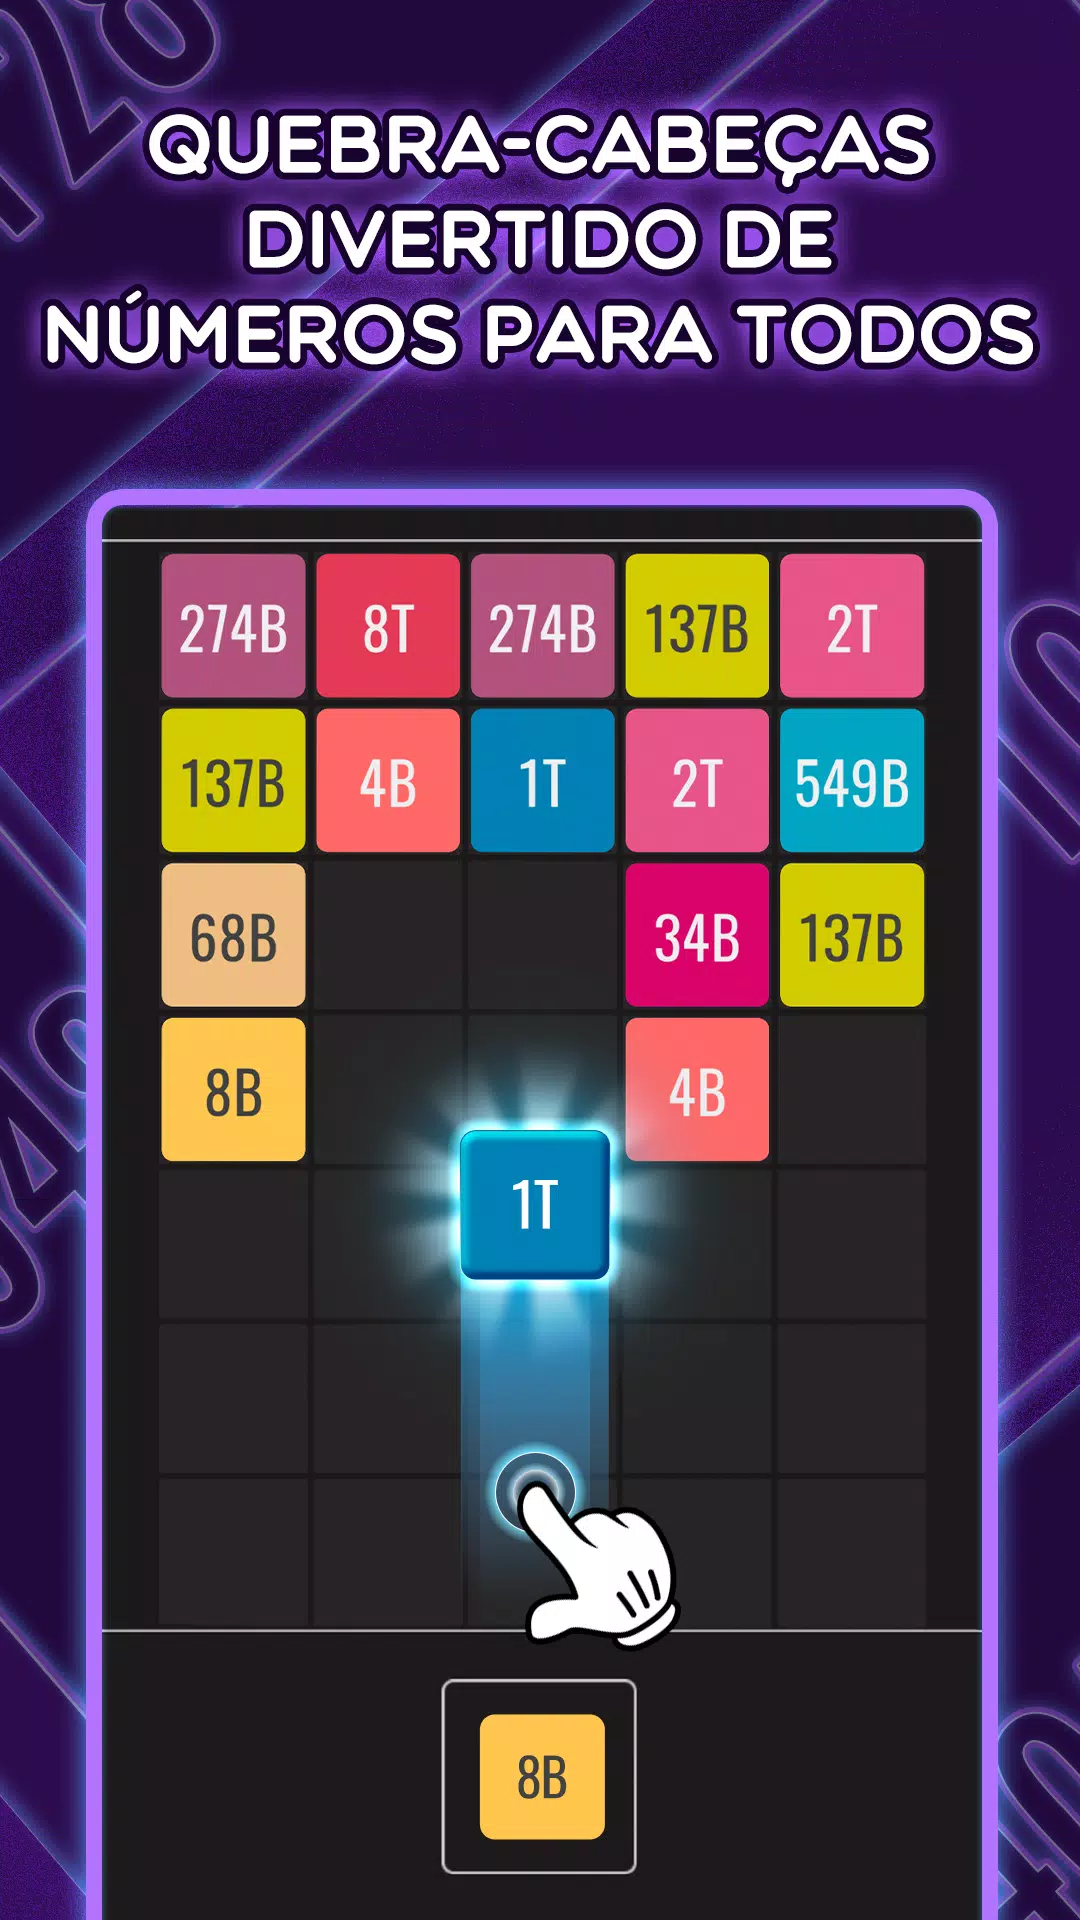 2048 - matemática Pro jogo de quebra-cabeça